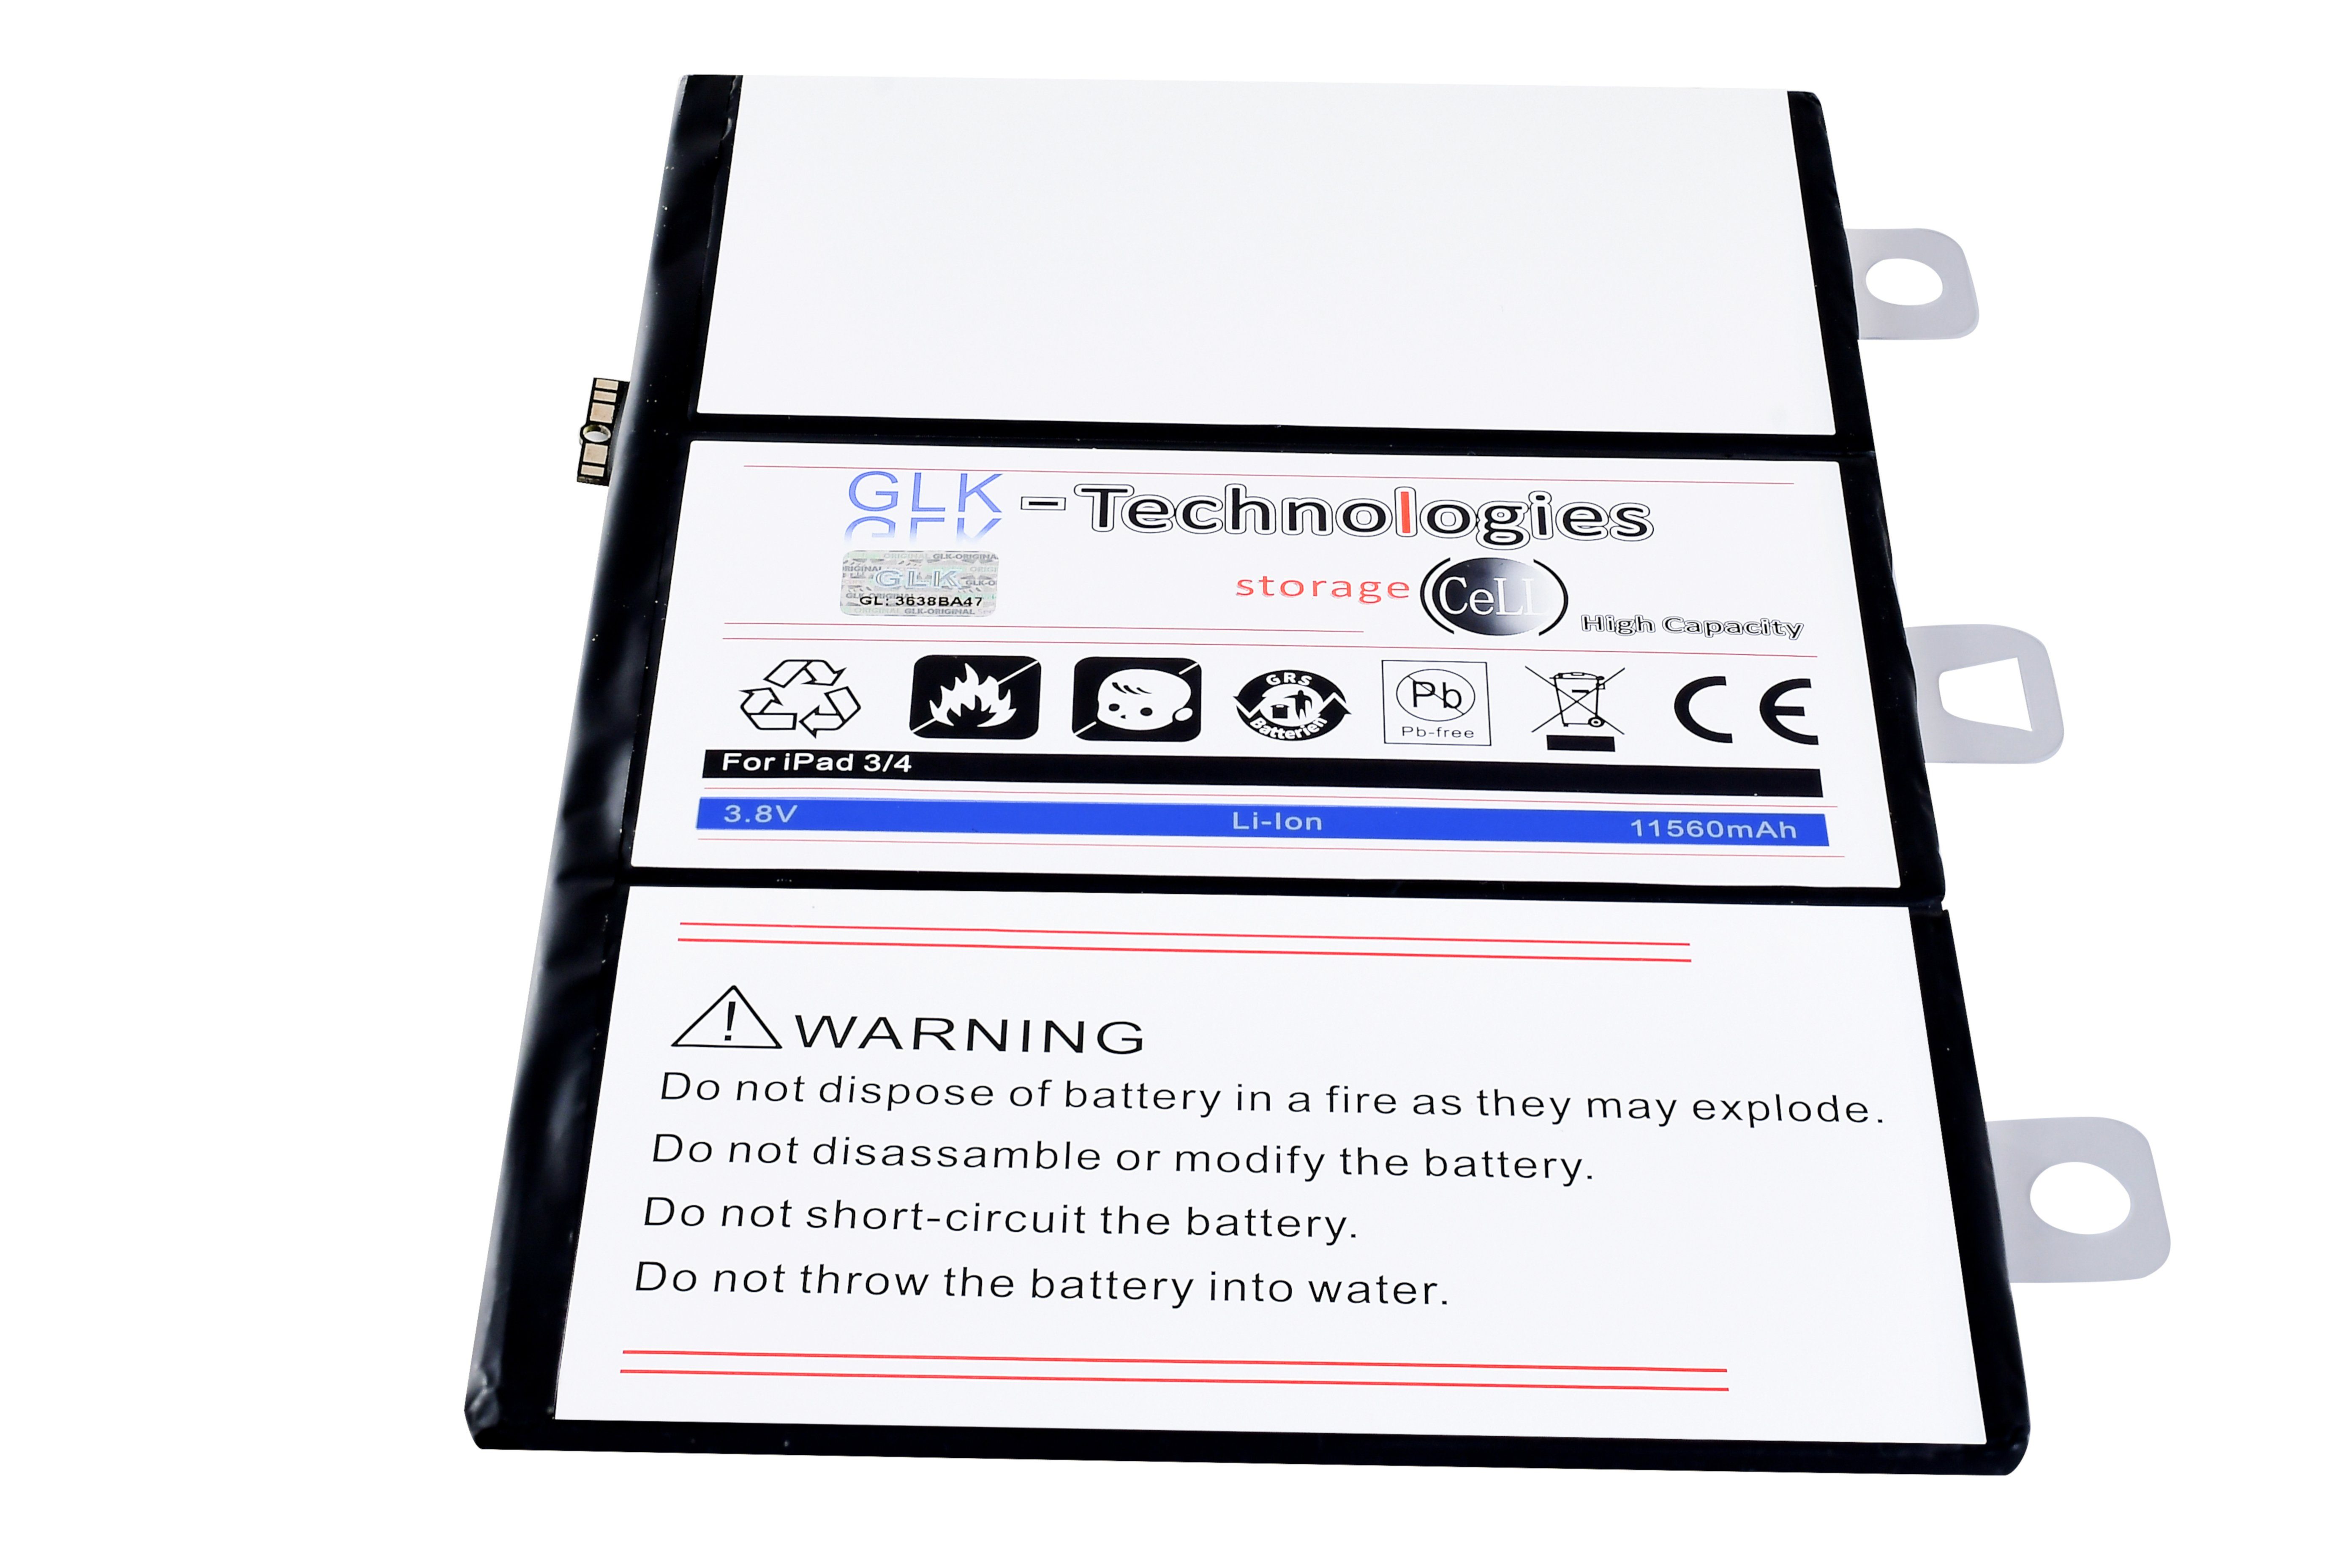 NEU A1458, Battery, Akku, mAh 11560 mAh Tablet-Akku iPad Kit kompatibel 3 V) GLK-Technologies inkl. High 11560 iPad GLK-Technologies Werkzeug mit A1460, Power (3.8 Ersatzakku Set accu, A1459, 3